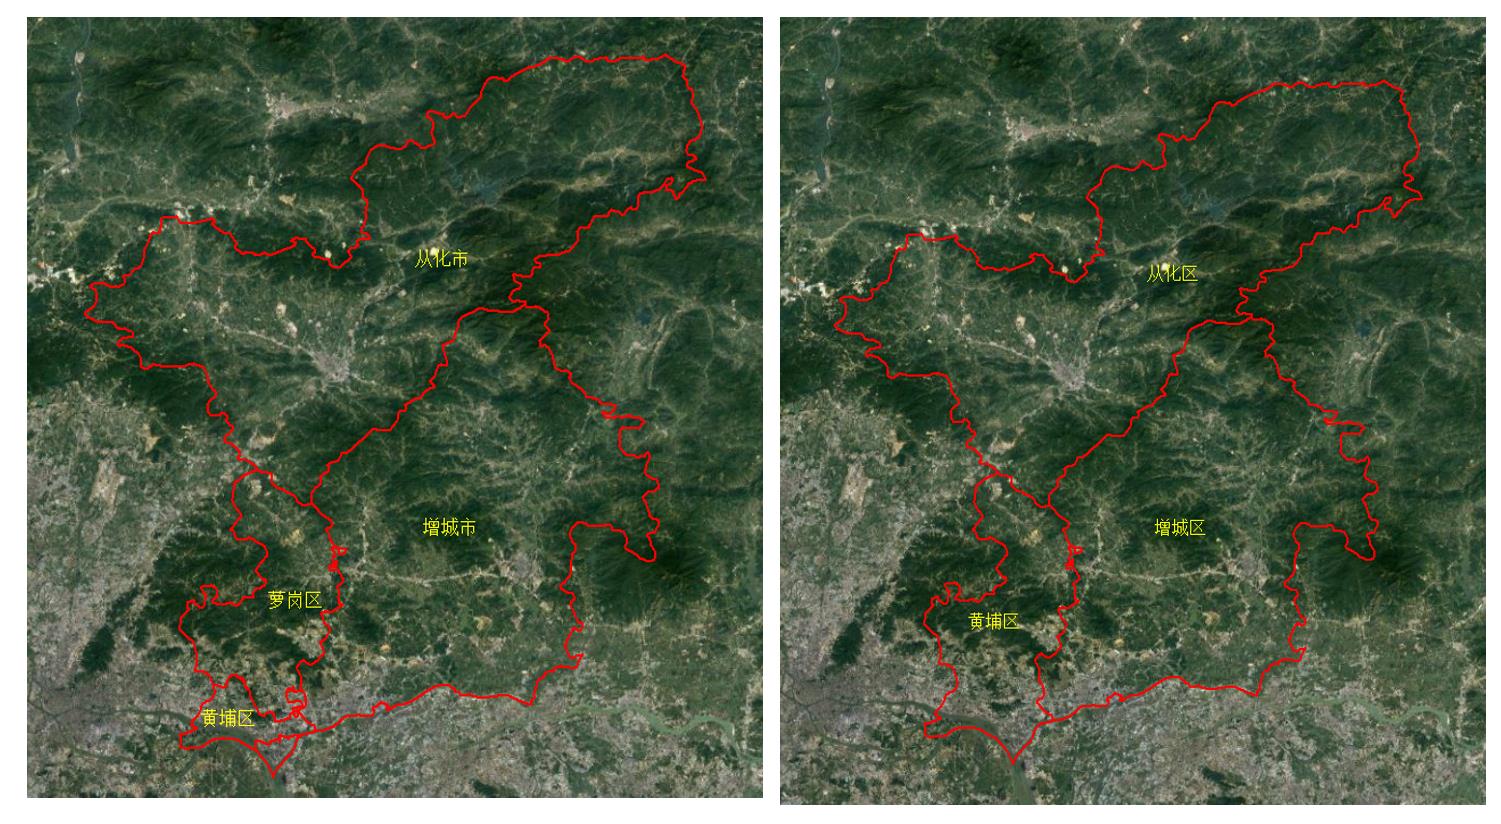 2013年和2014年广州市更改区域图